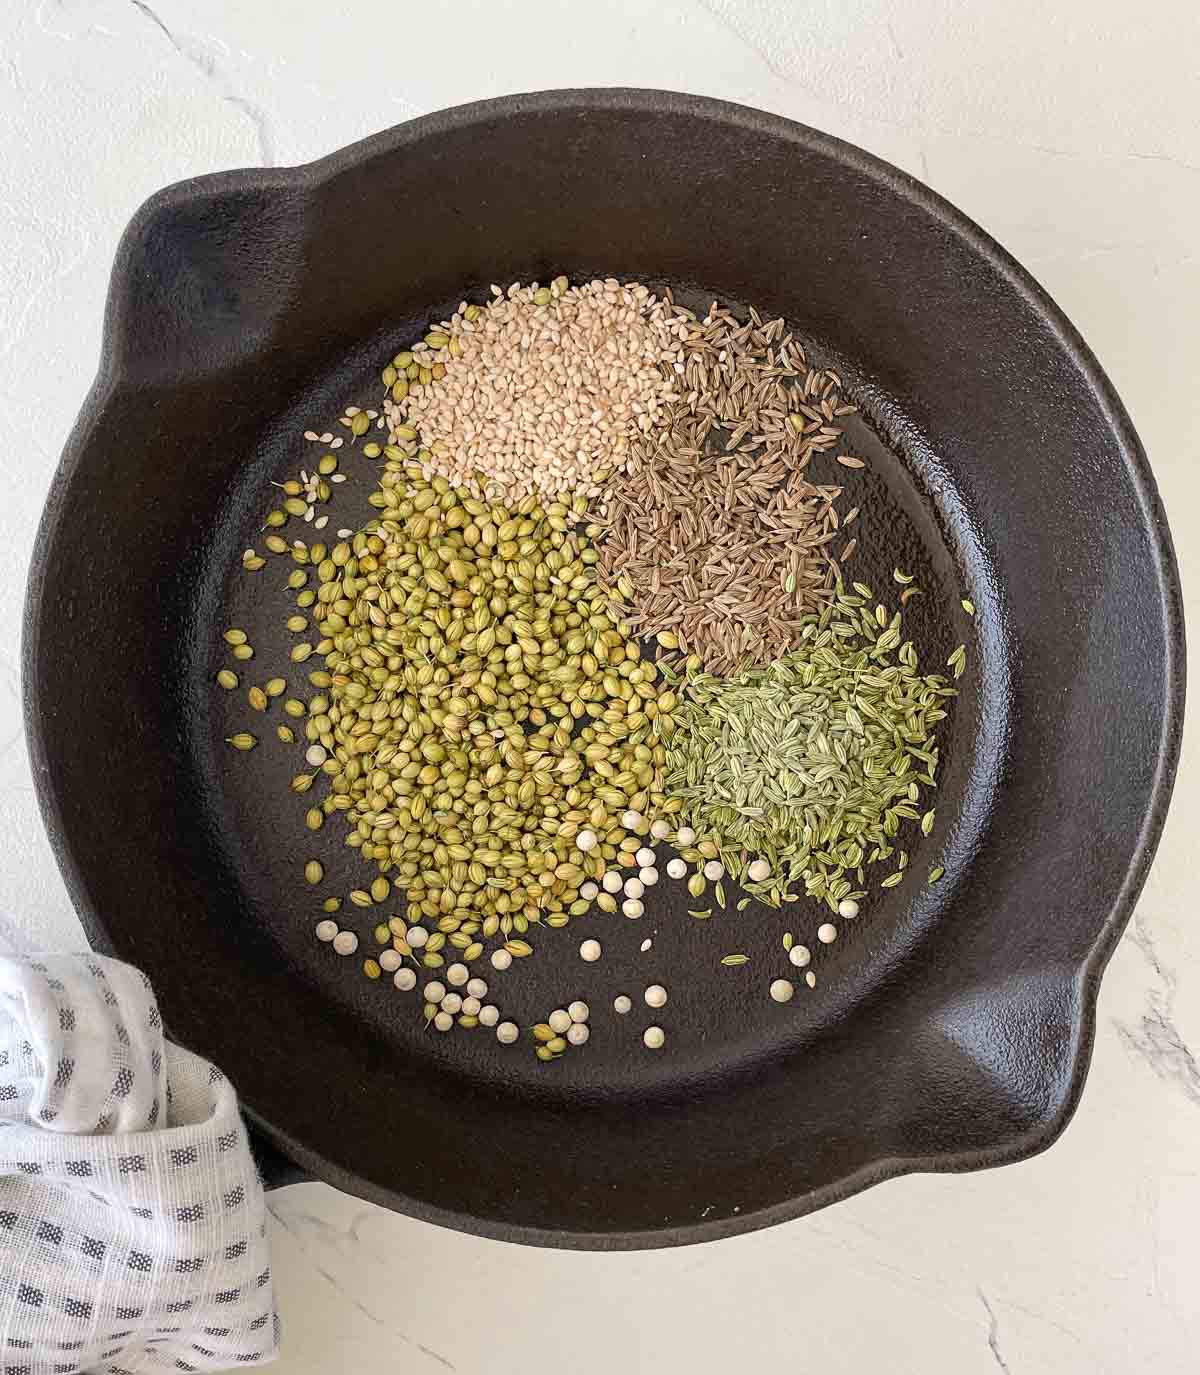 Dukkah seasonings toasting in a pan